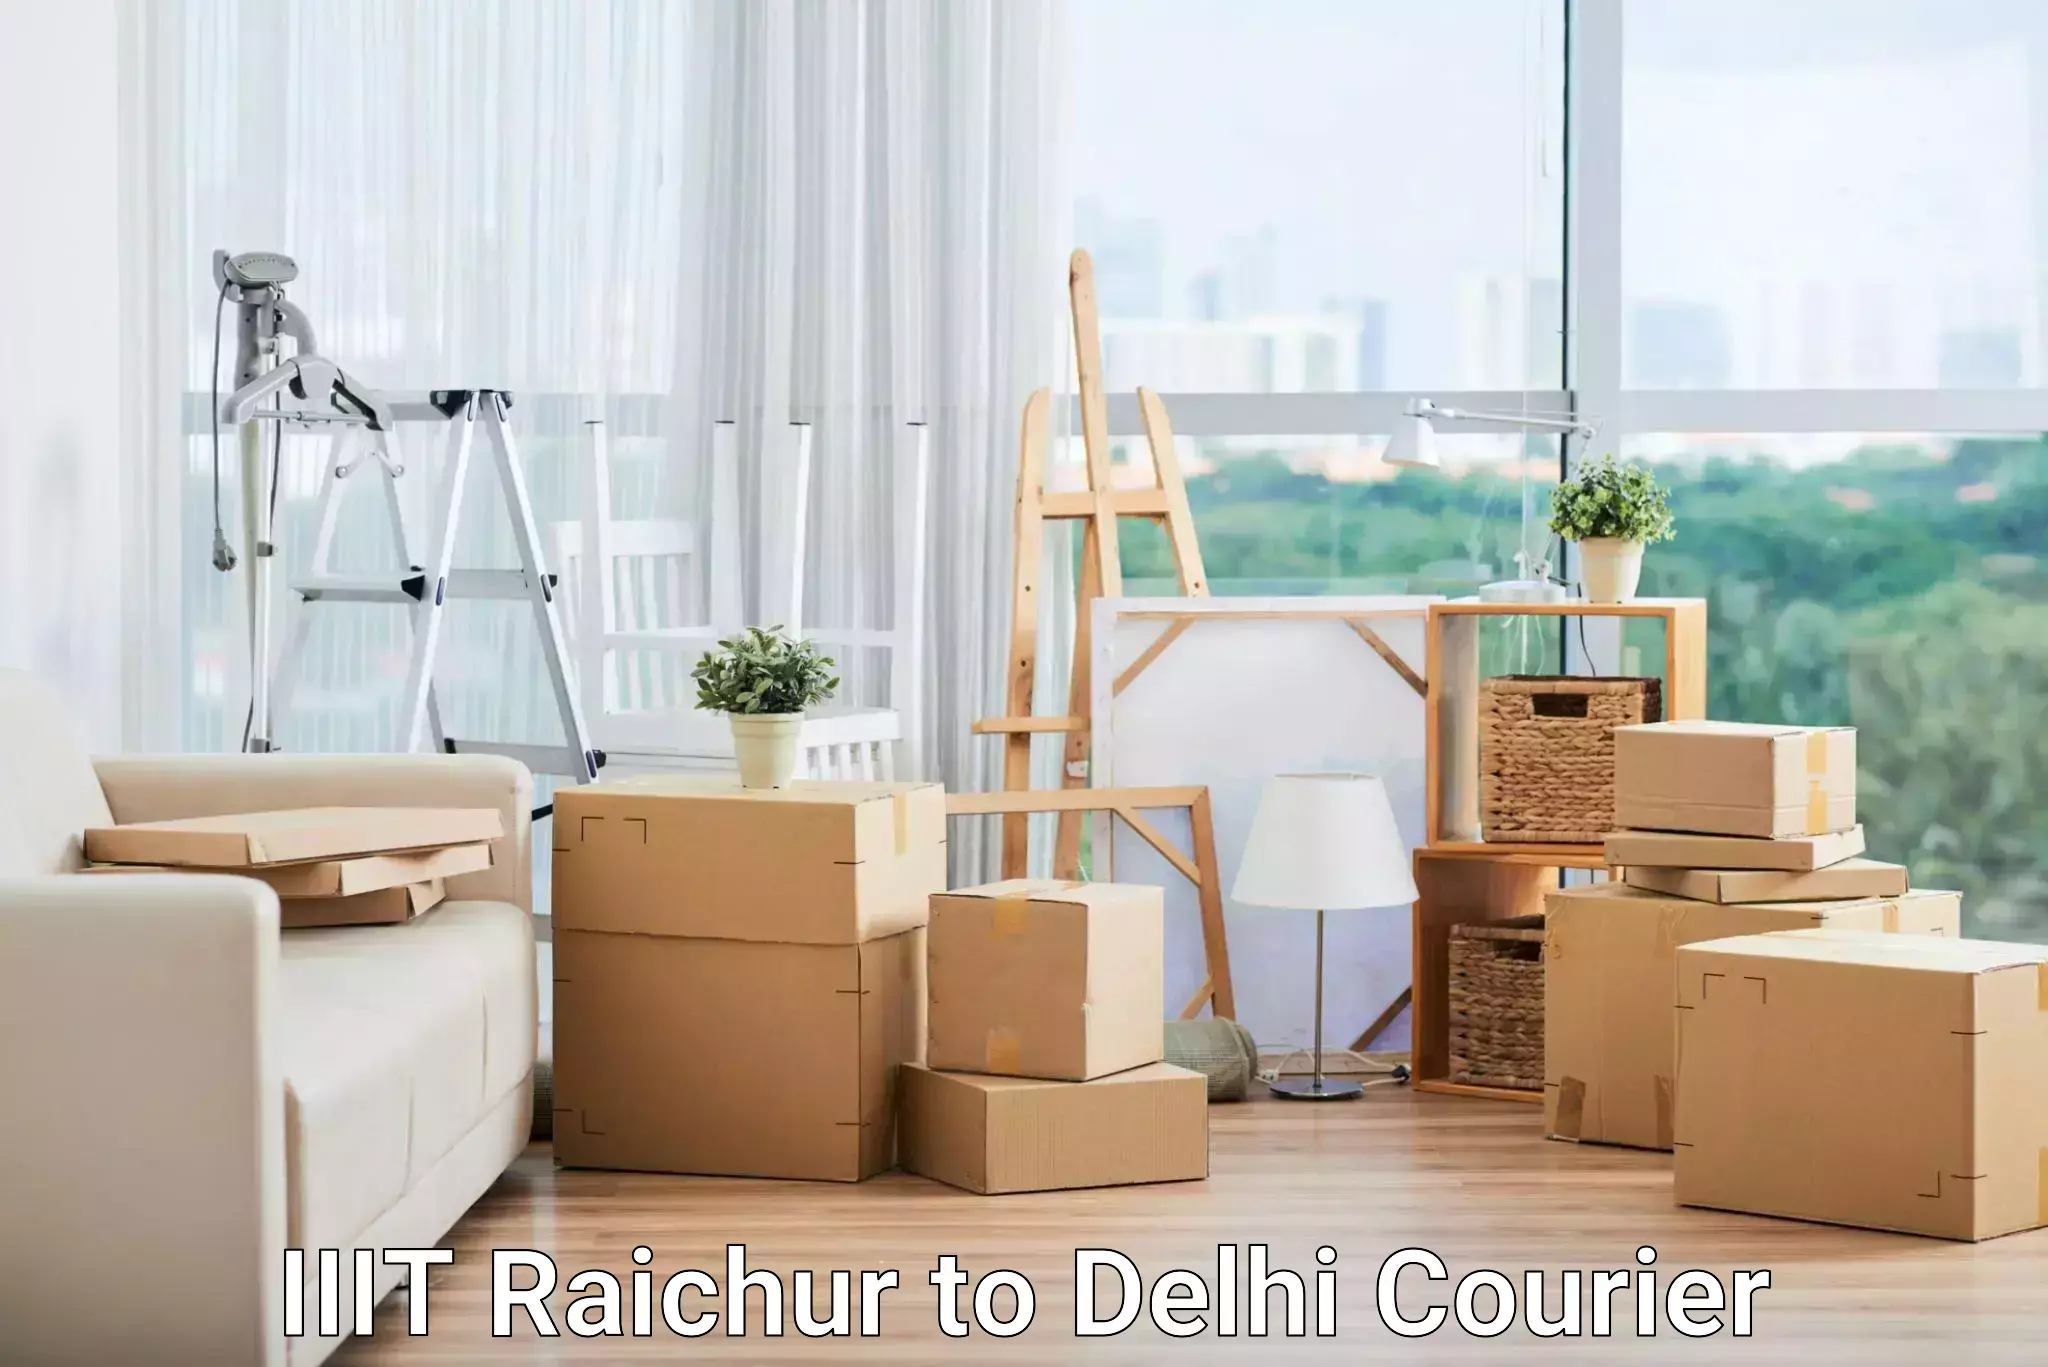 Efficient parcel transport IIIT Raichur to IIT Delhi